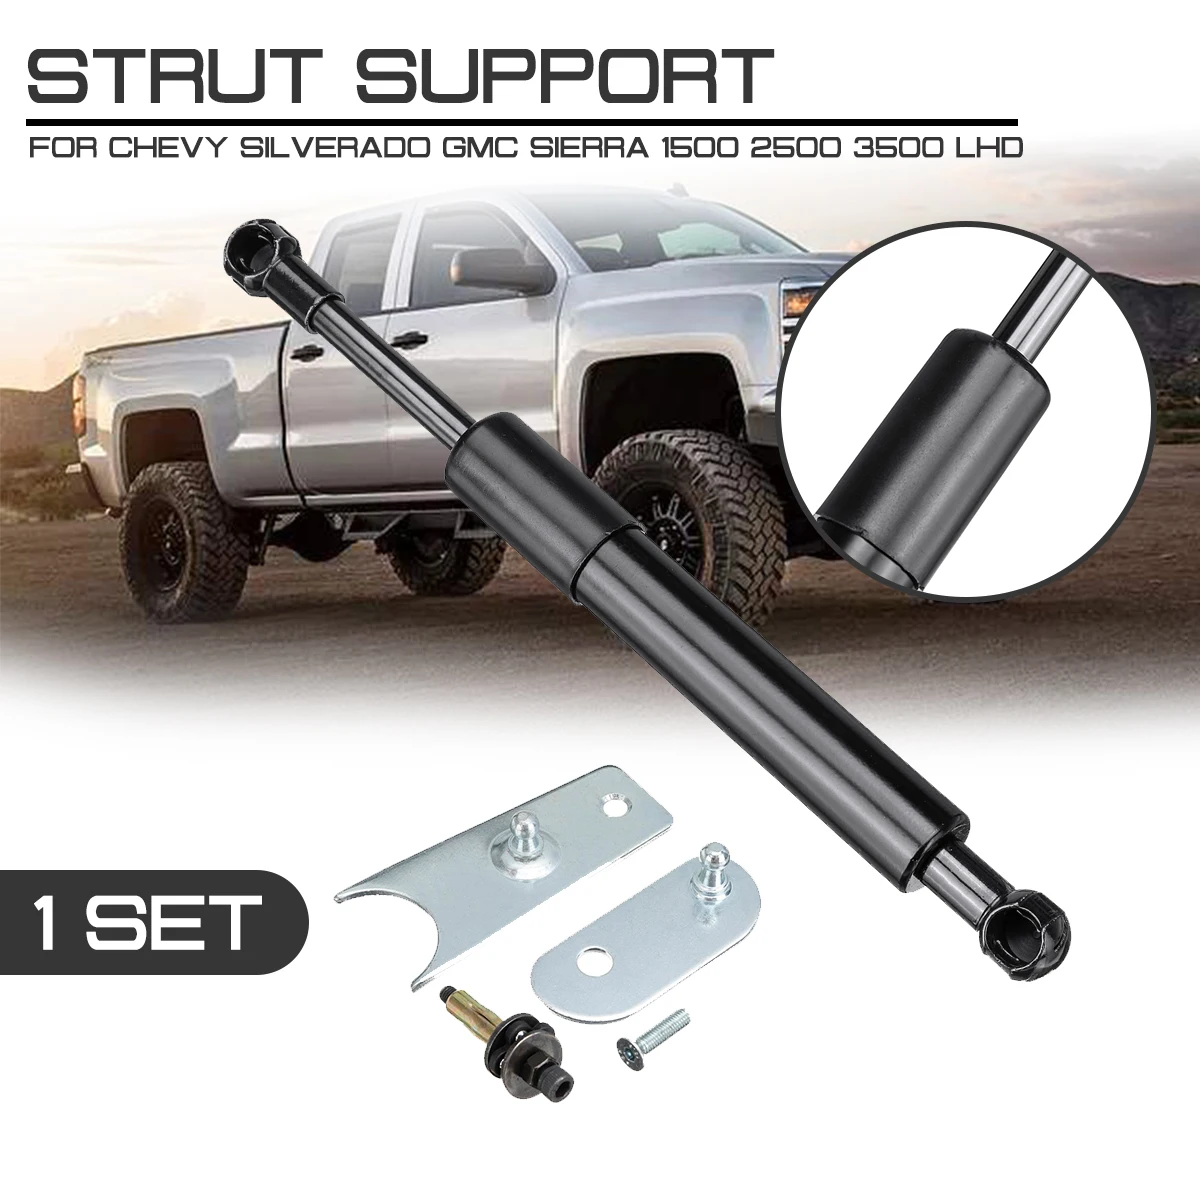 

Rear Trunk Support Hydraulic Car Interior Rod Strut Spring Bars Shock Bracket For Chevy Silverado GMC Sierra 1500 2500 3500 LHD